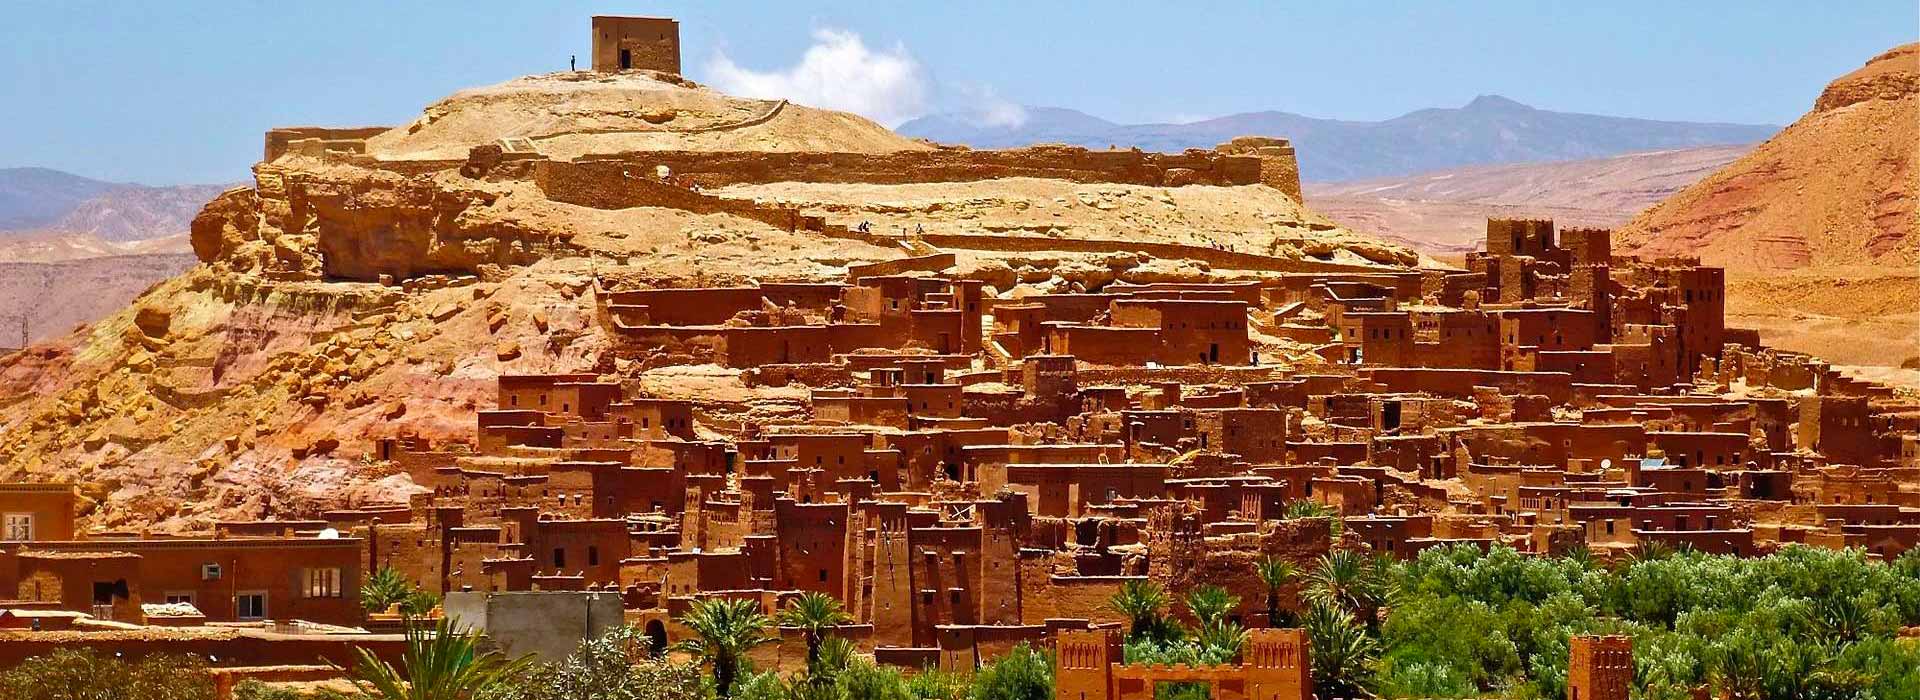 Marocco: alla ricerca dell’amuleto magico per l’export